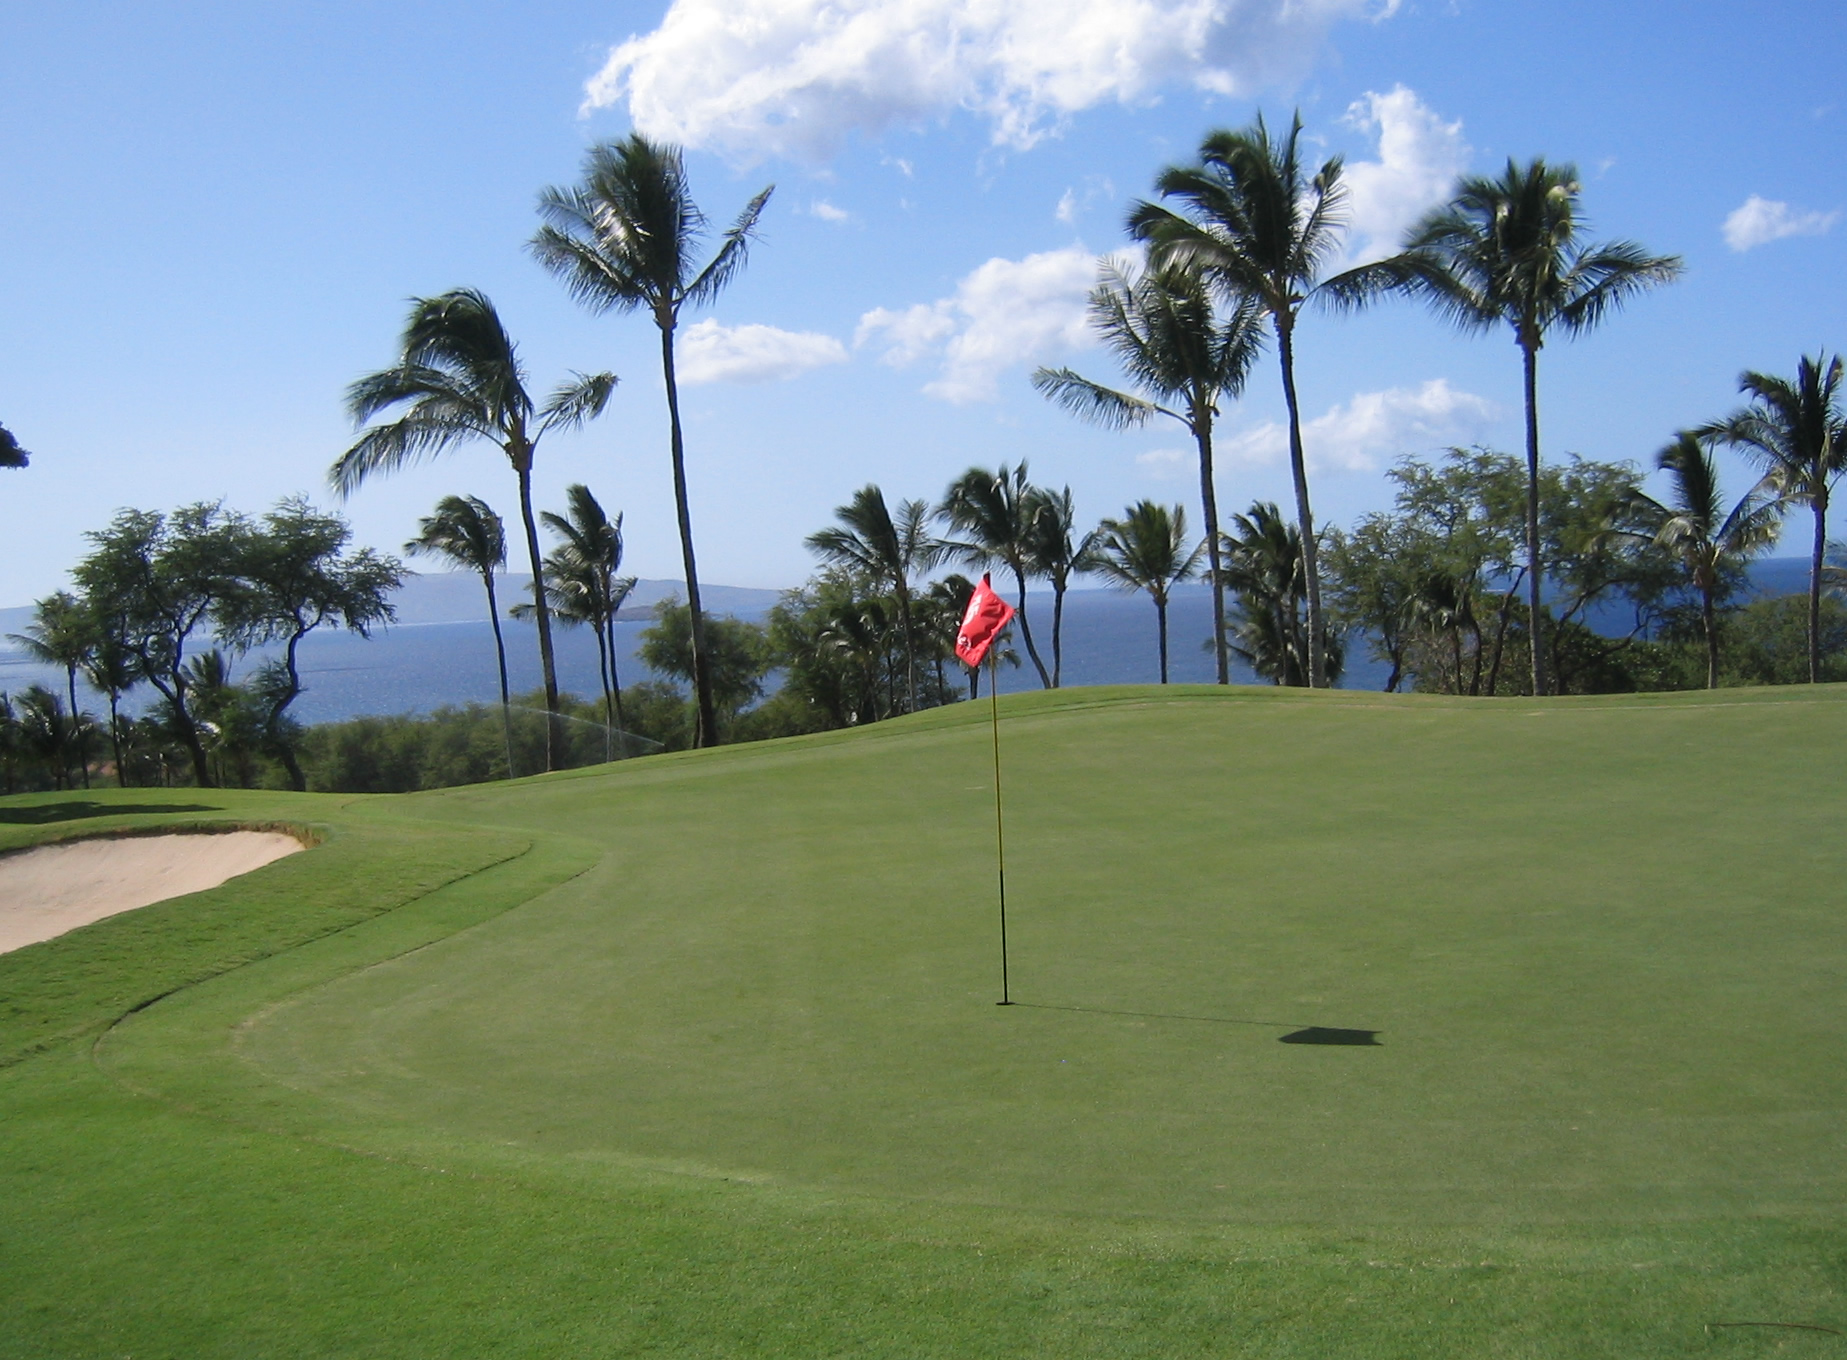 Golf Course in Wailea Maui